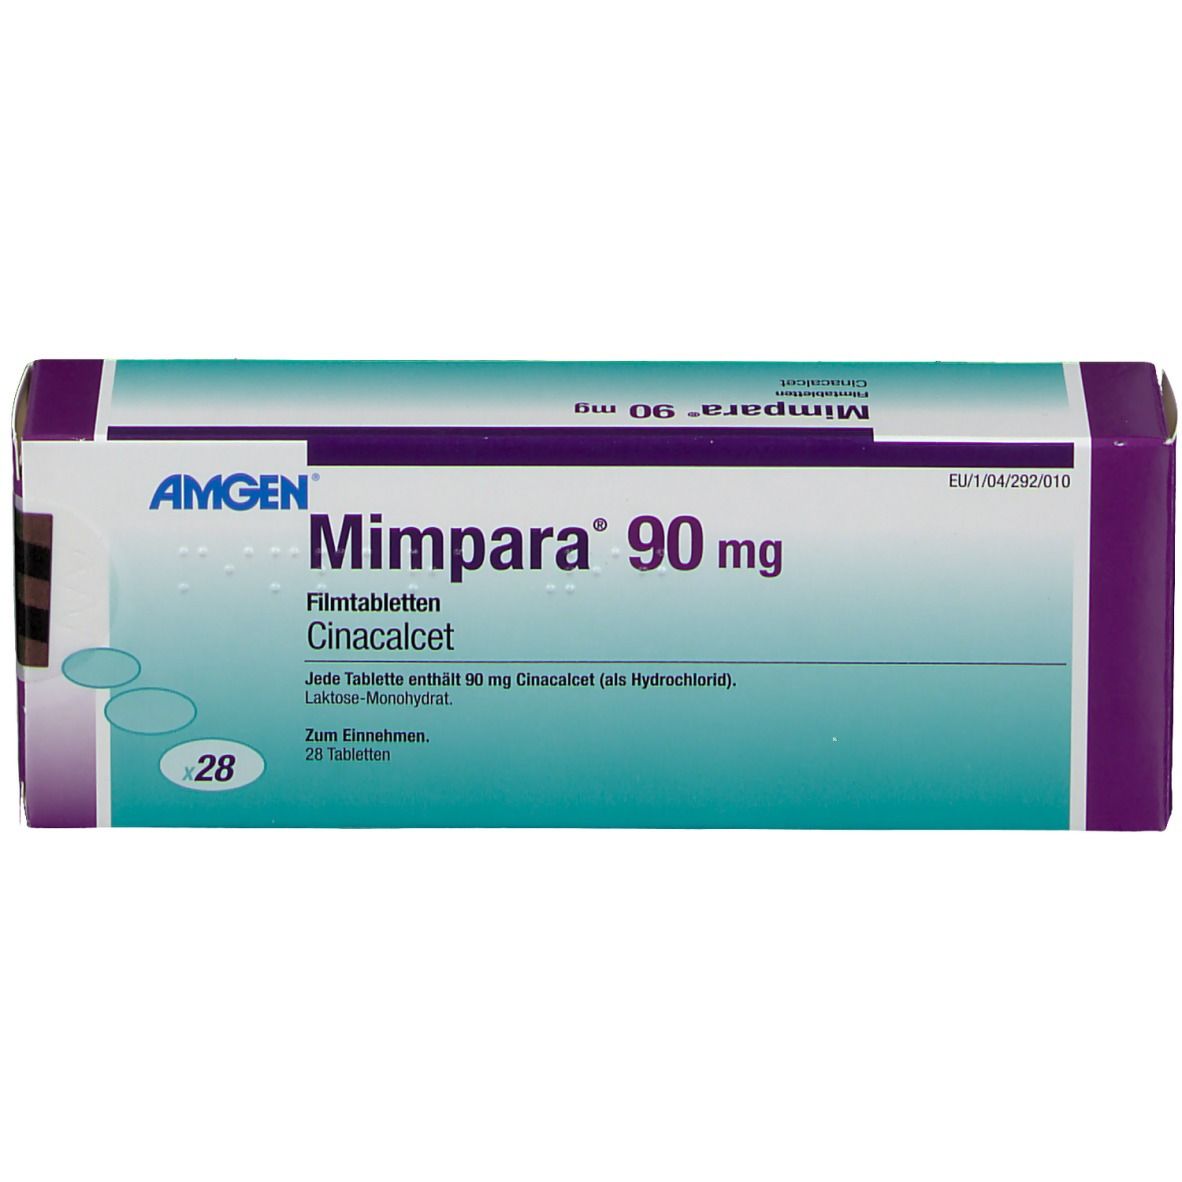 Mimpara® 90 mg